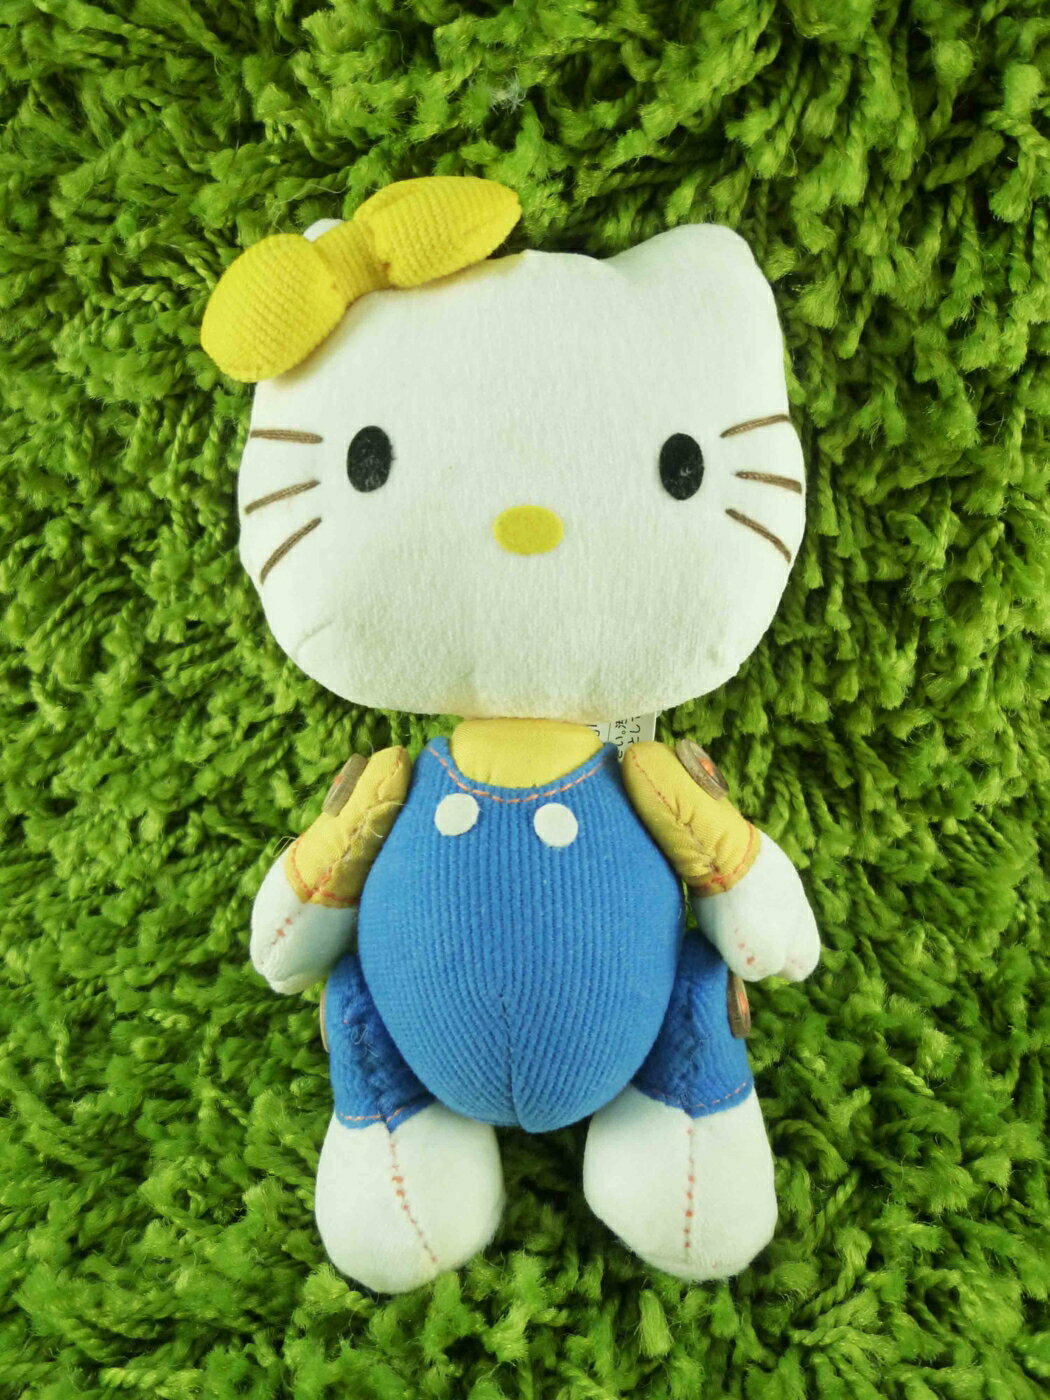 【震撼精品百貨】Hello Kitty 凱蒂貓 可折絨毛娃娃-藍吊帶 震撼日式精品百貨